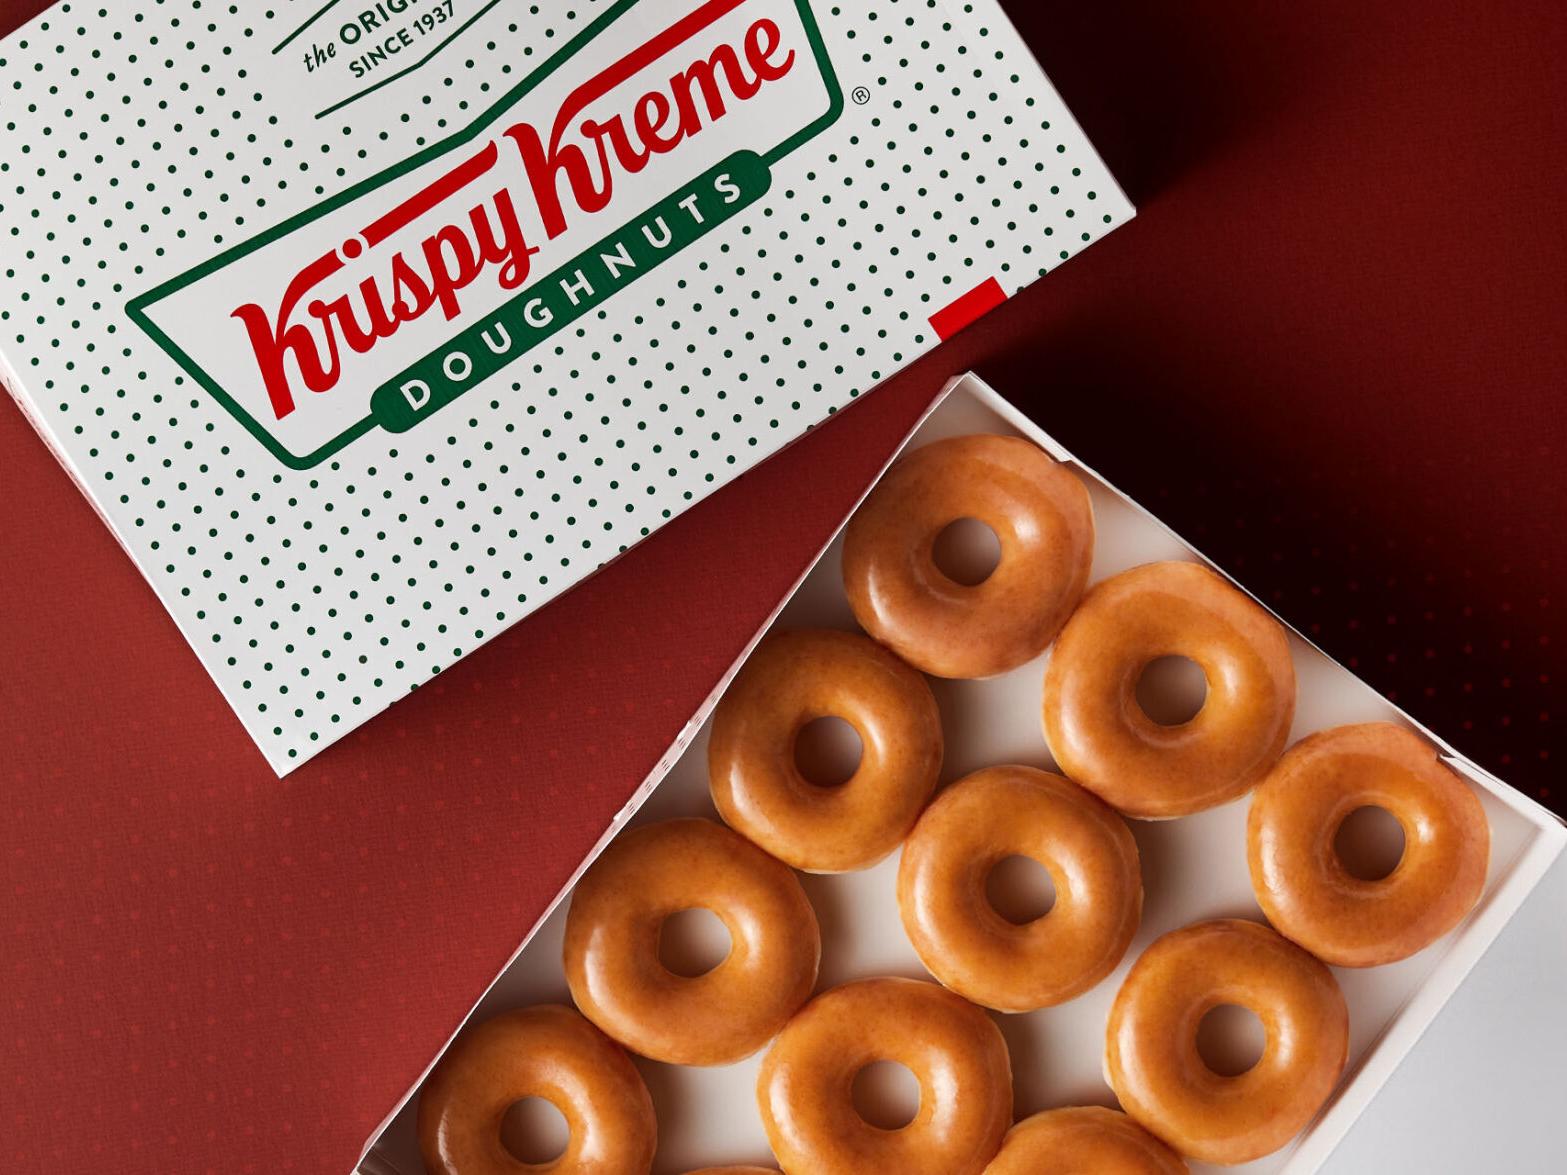 Krispy Kreme donuts and box.